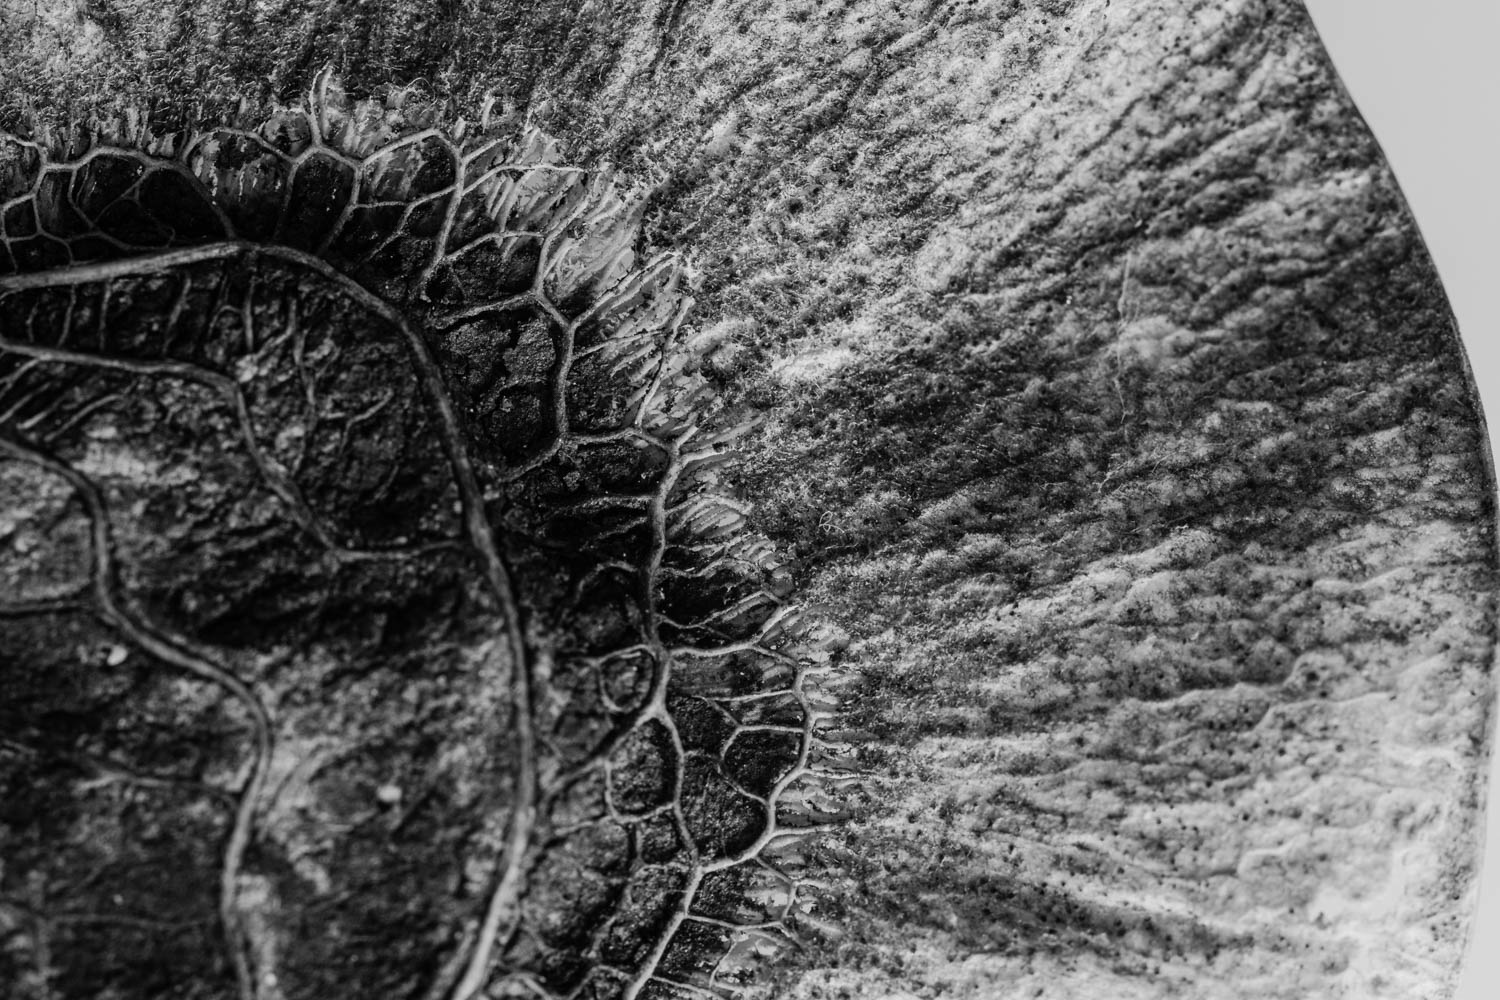 Angsana tree seed pod macro photograph.